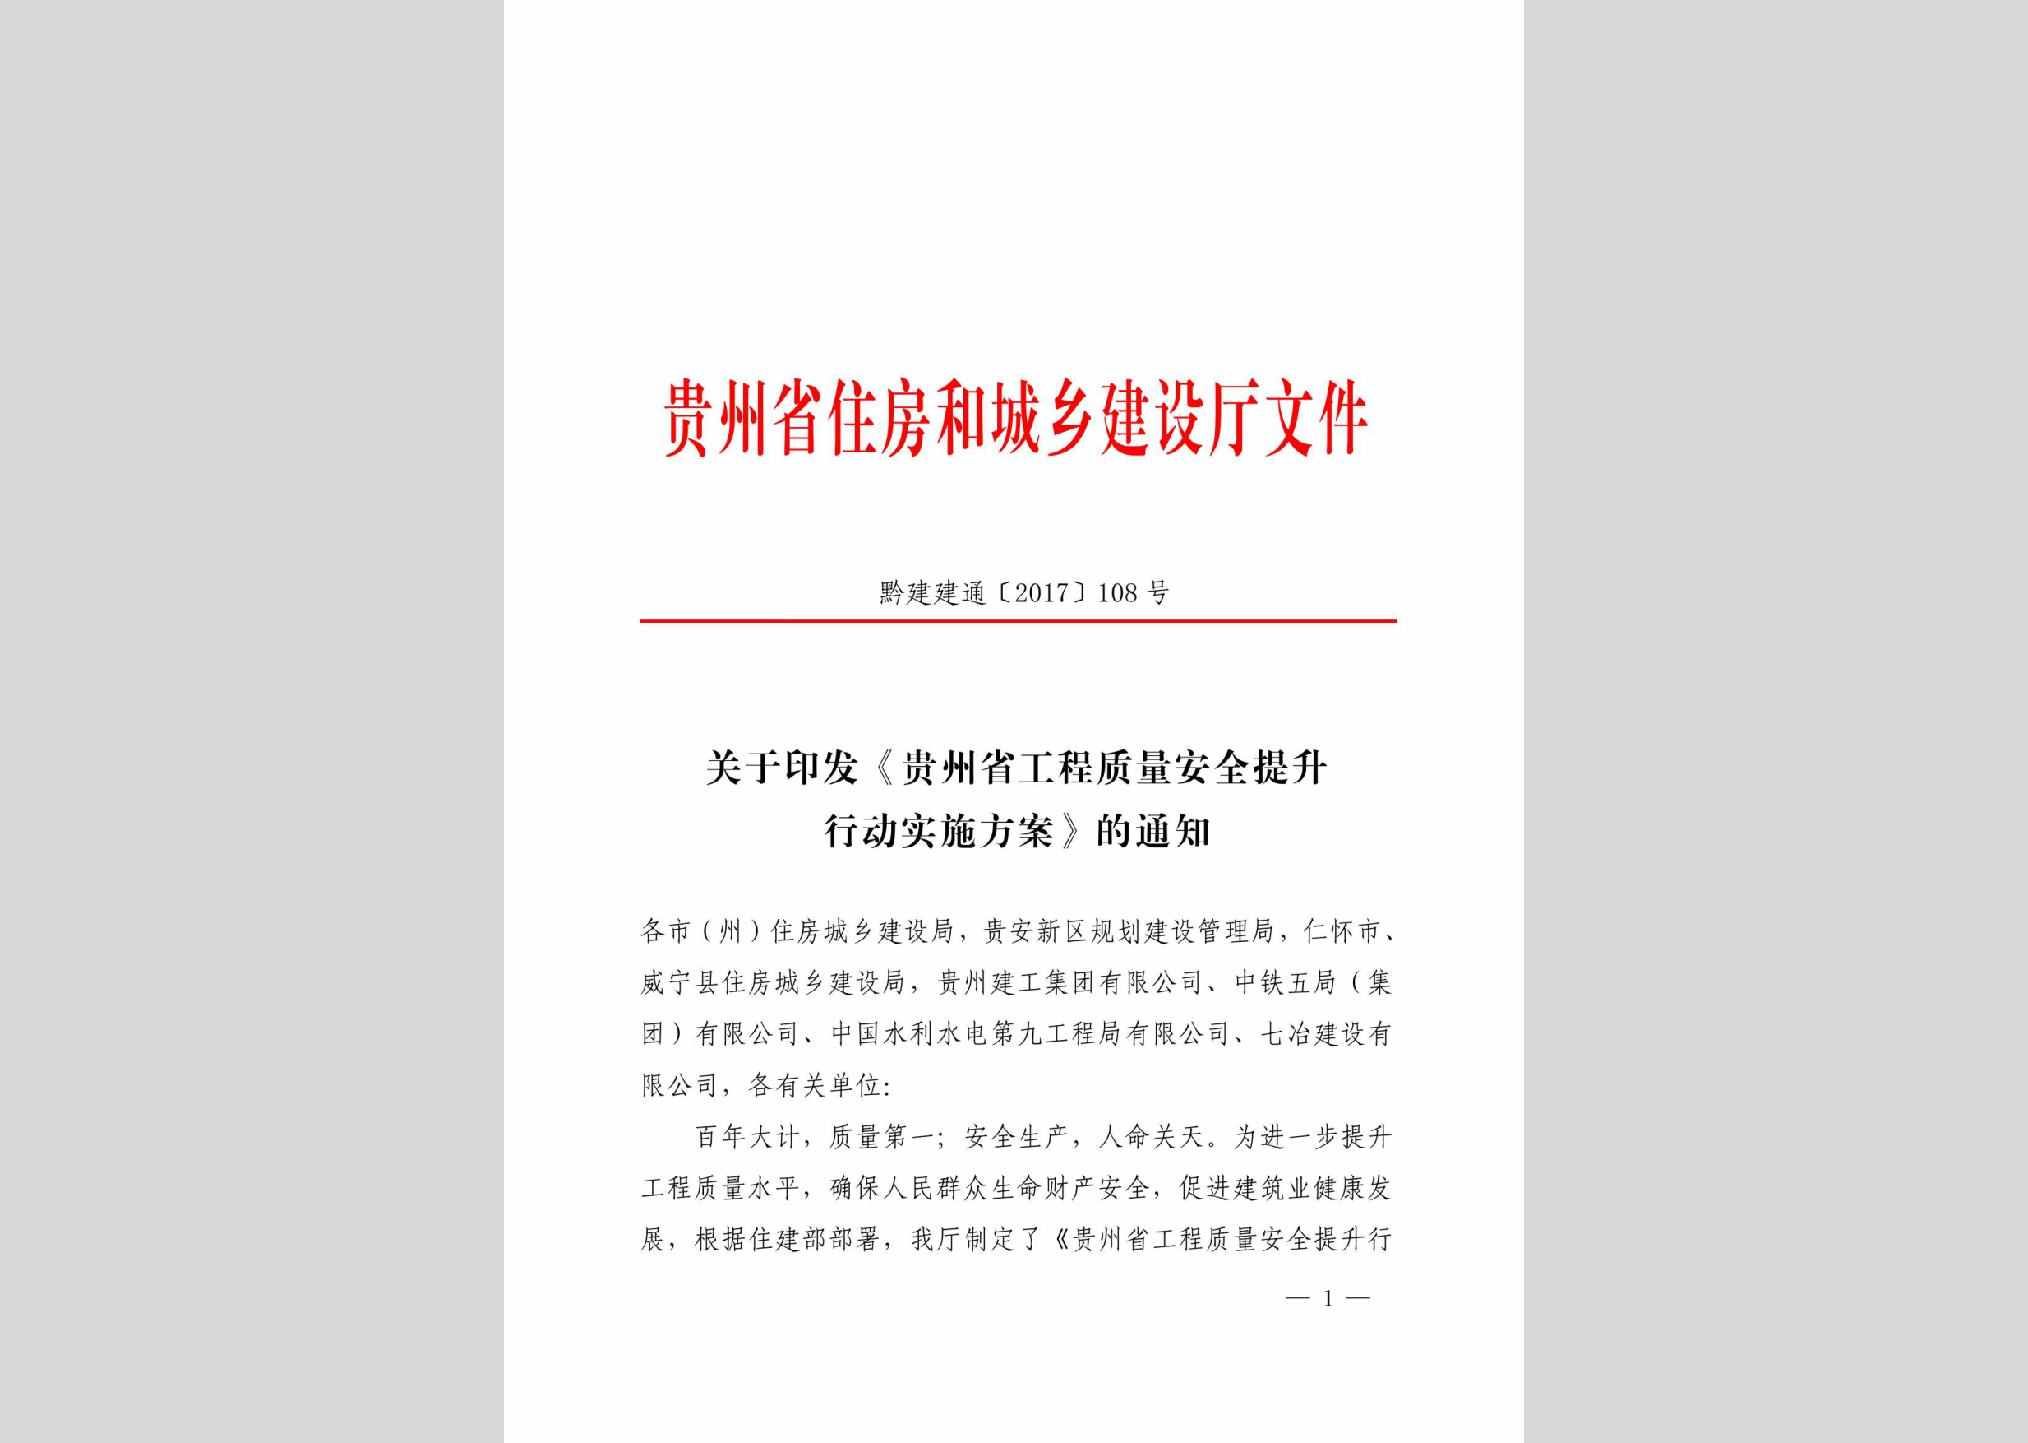 黔建建通[2017]108号：关于印发《贵州省工程质量安全提升行动实施方案》的通知